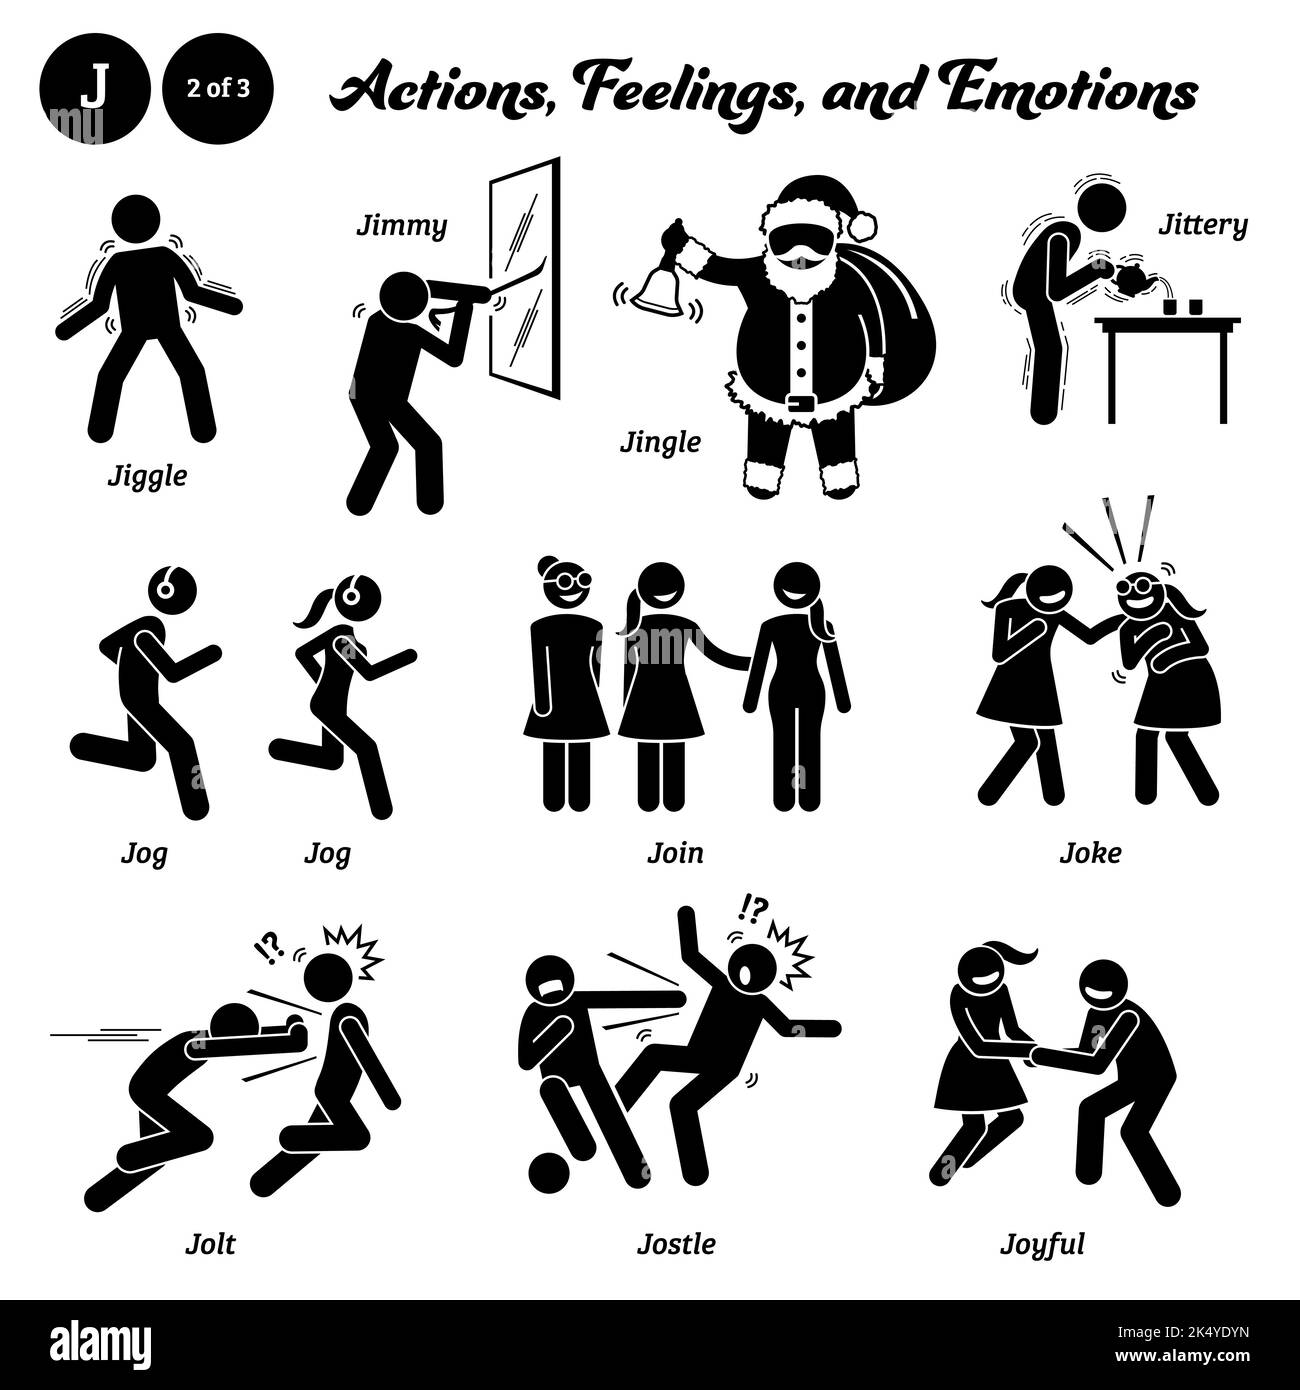 Bastone figura persone umane uomo azione, sentimenti, ed emozioni icone alfabeto J. jiggle, jimmy, jingle, jittery, Jog, jogging, join, joke, jolt, jostle, Illustrazione Vettoriale